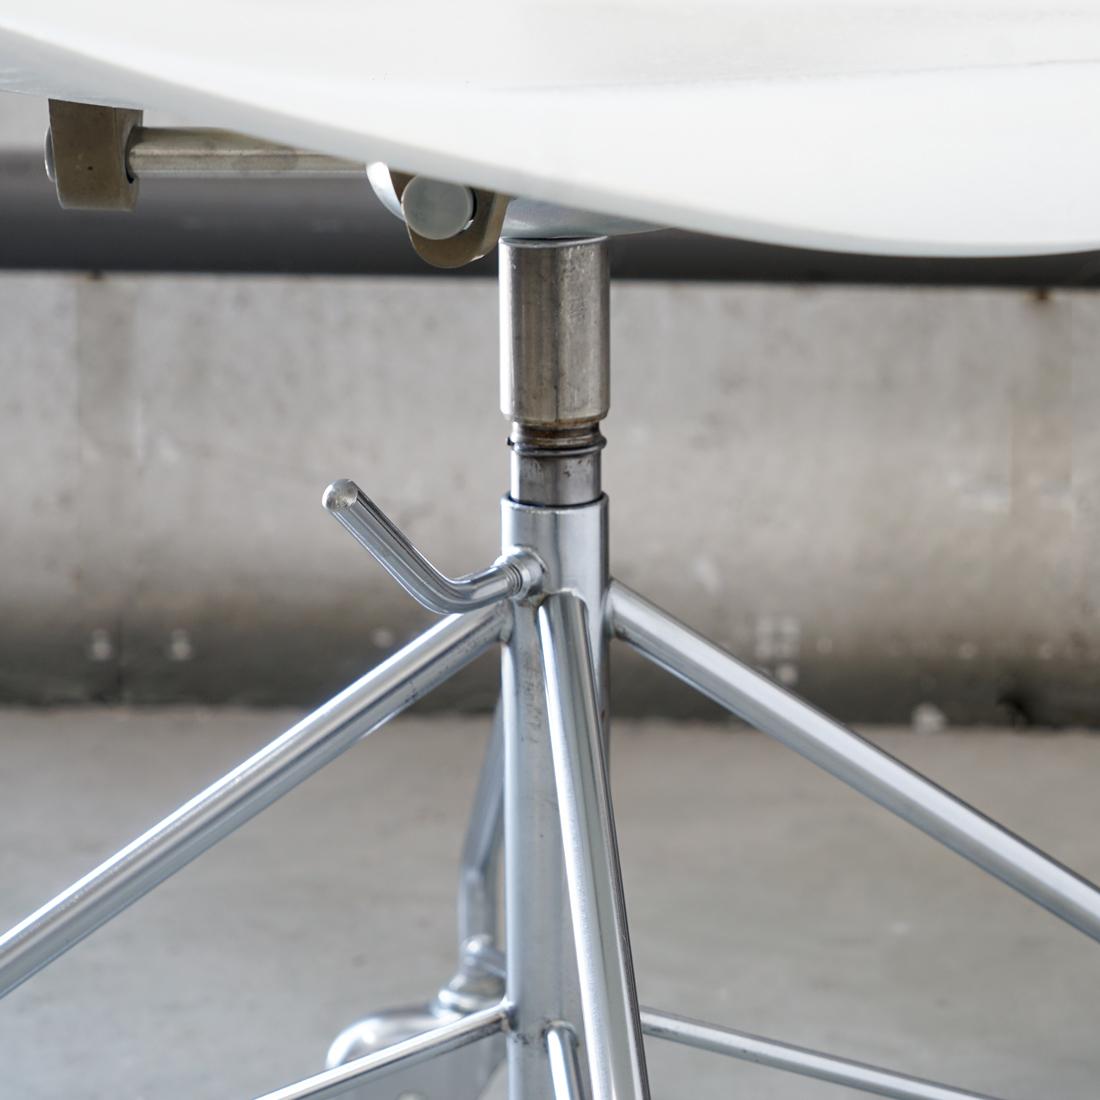 Laminated 3117 Model Series 7 Desk Chair by Arne Jacobsen for Fritz Hansen, Denmark